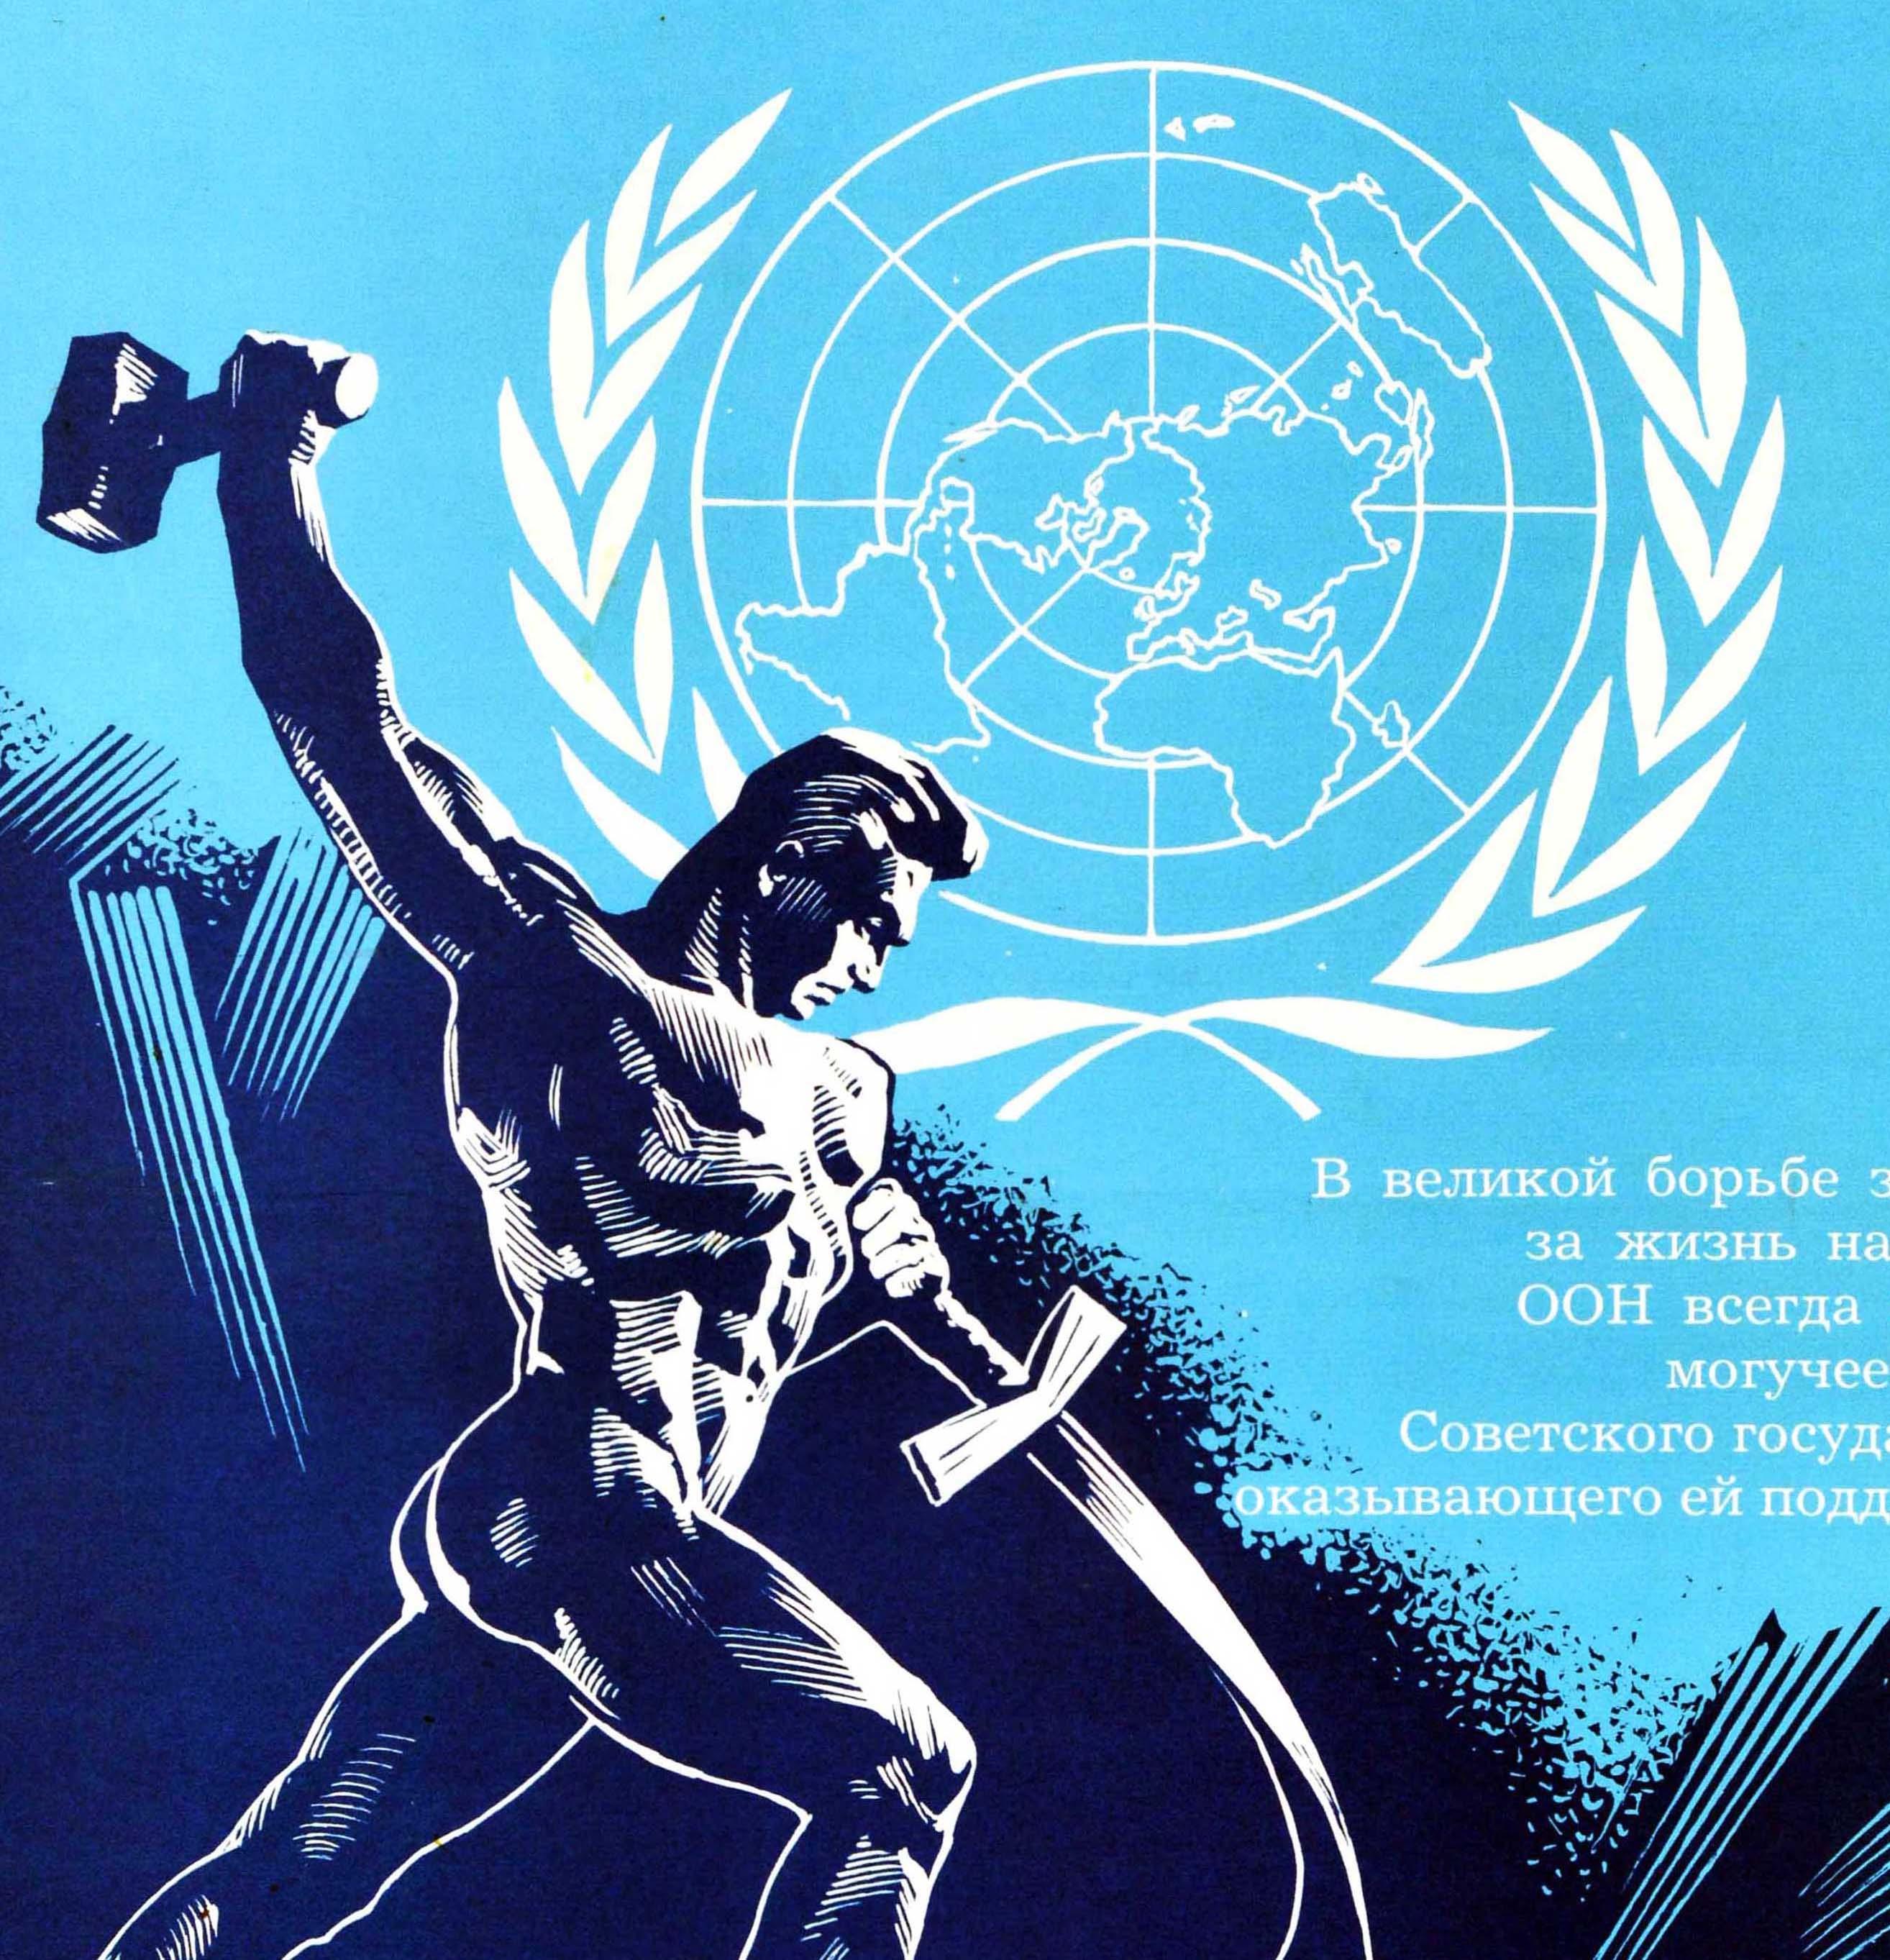 Affiche soviétique vintage originale pour le 40e anniversaire des Nations Unies (créées en 1945) - Перекуем мечи на орала ! Forgeons des épées pour en faire des charrues - avec un dessin dynamique d'un homme tenant un marteau et pliant une épée